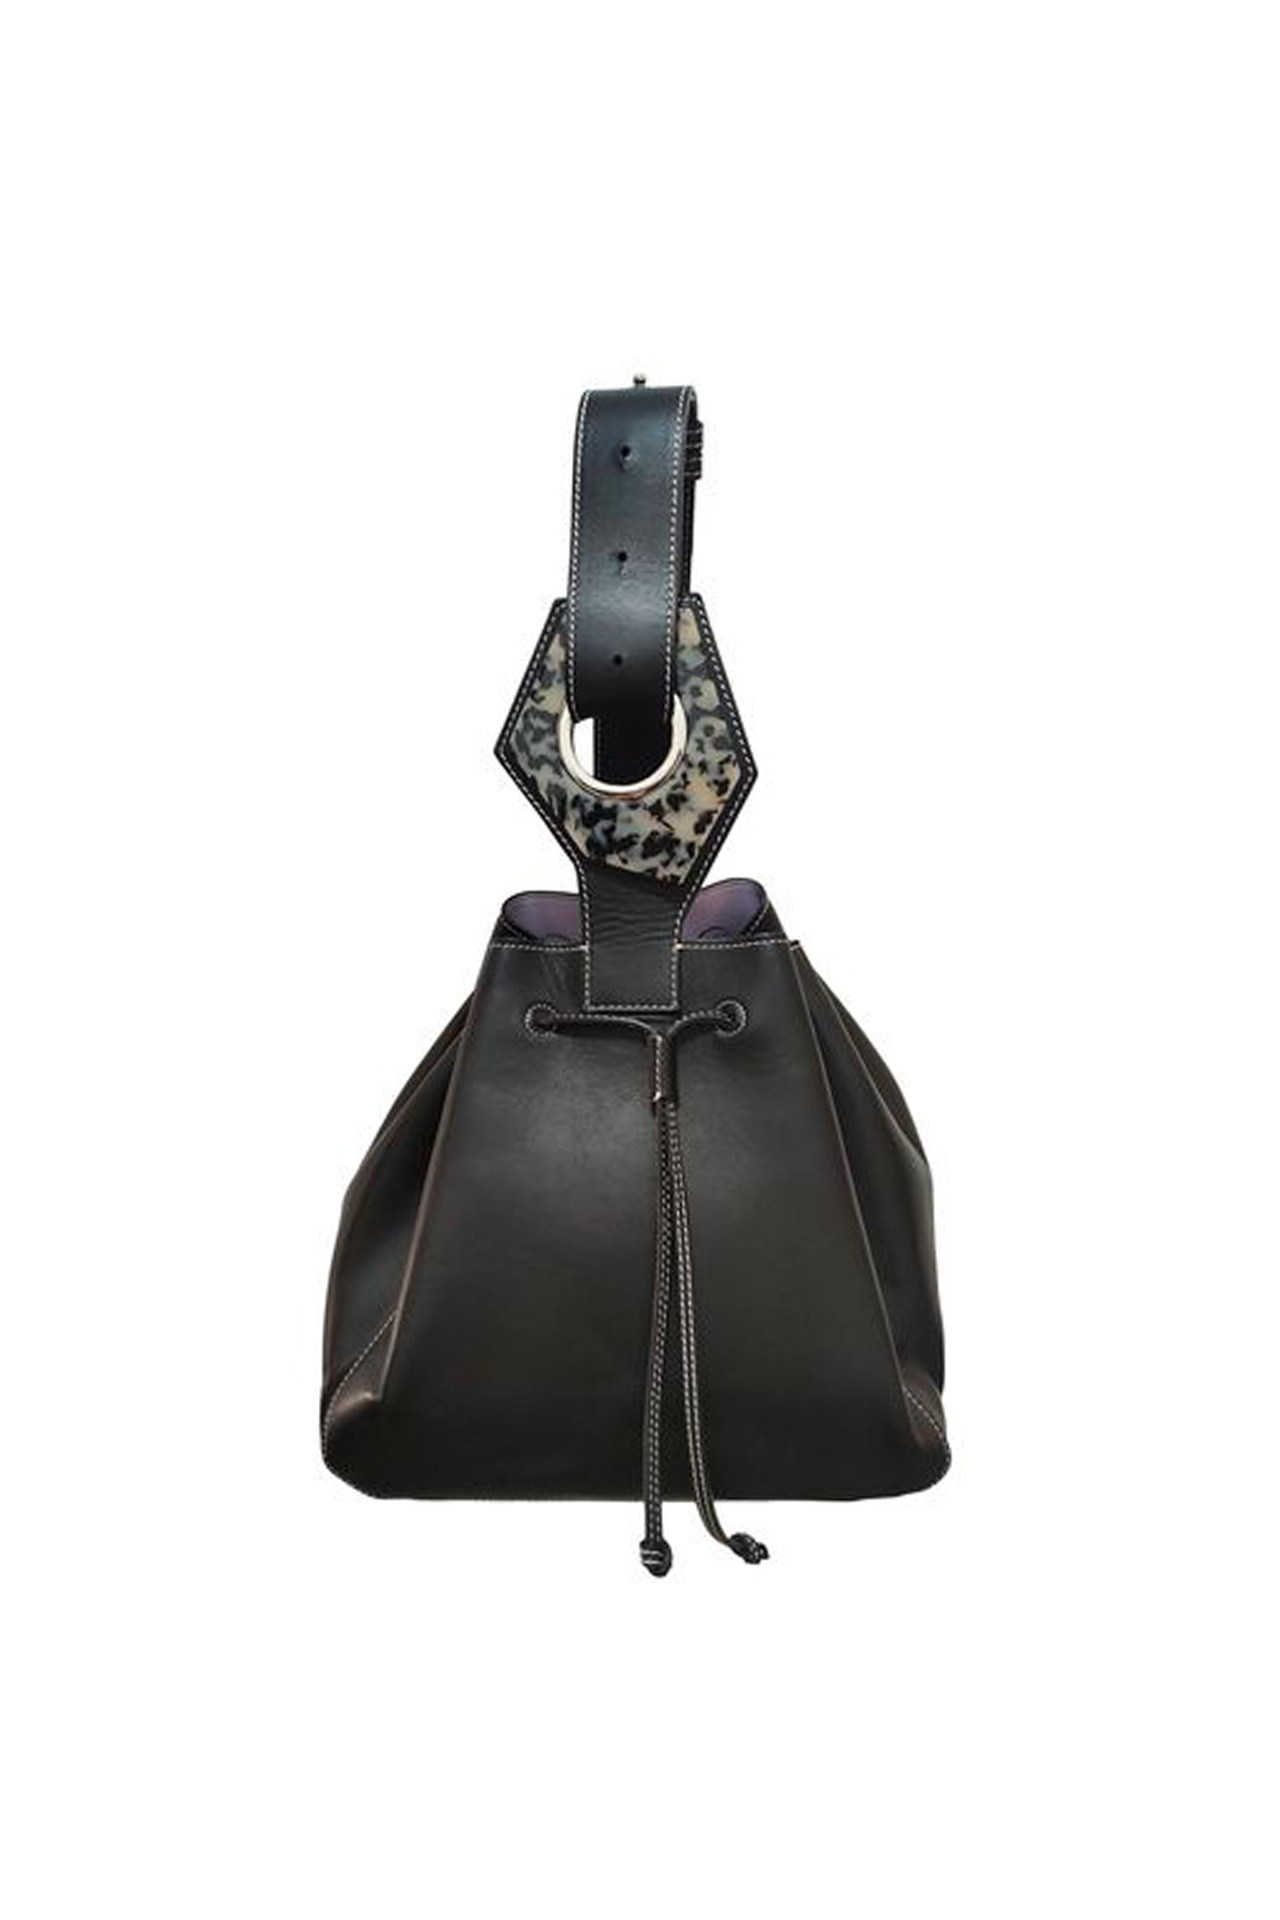 The Best Designer Handbags of 2021 - Vestiaire Collective